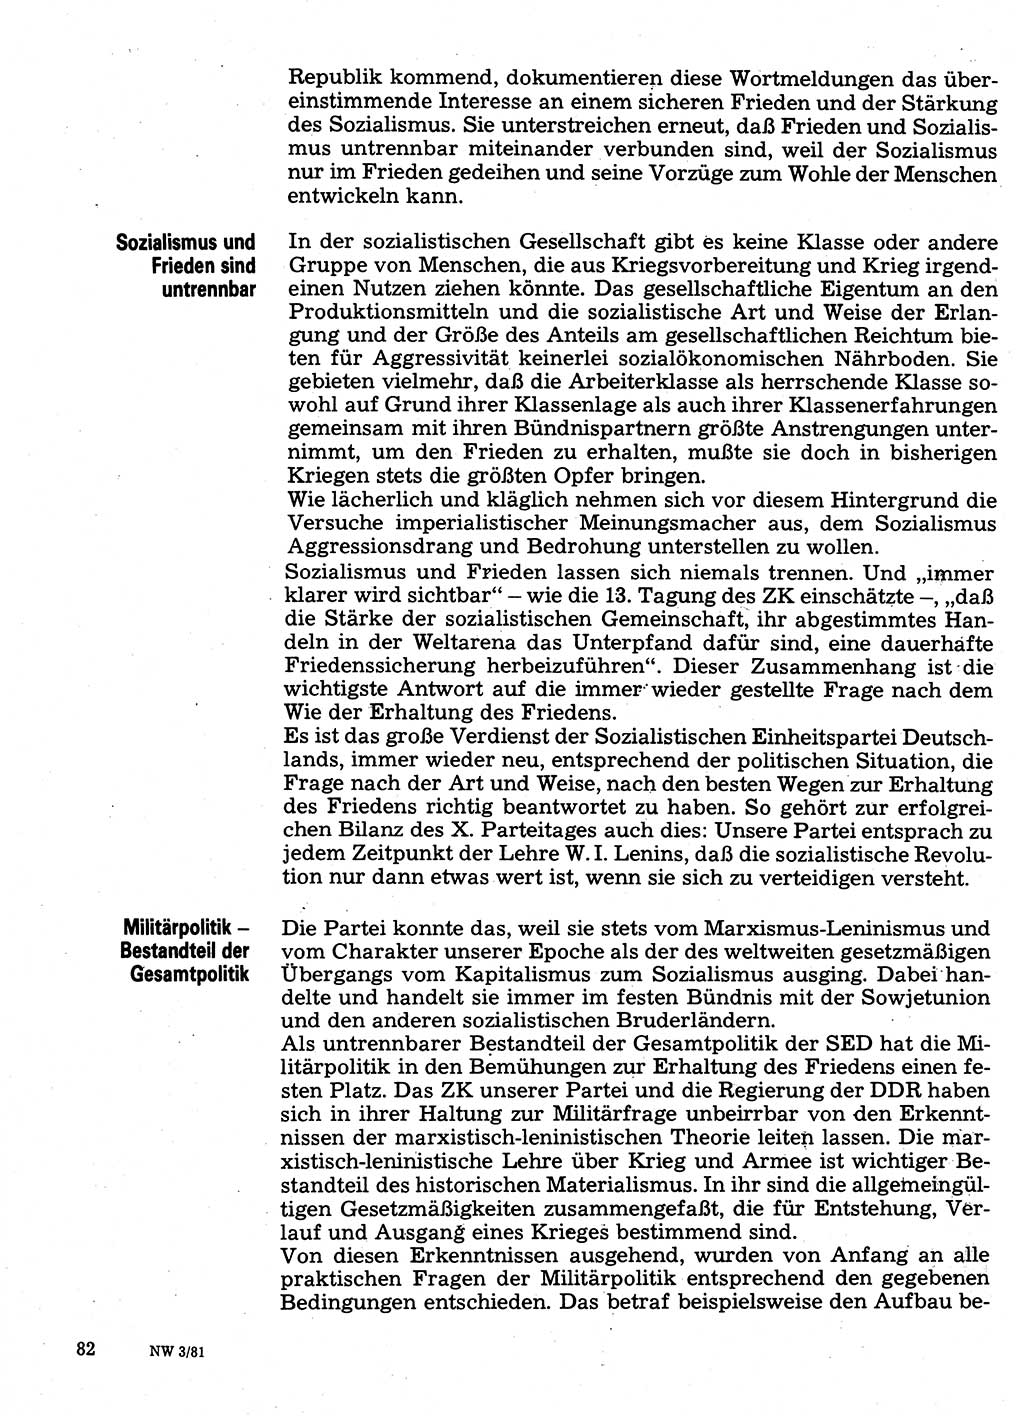 Neuer Weg (NW), Organ des Zentralkomitees (ZK) der SED (Sozialistische Einheitspartei Deutschlands) für Fragen des Parteilebens, 36. Jahrgang [Deutsche Demokratische Republik (DDR)] 1981, Seite 82 (NW ZK SED DDR 1981, S. 82)